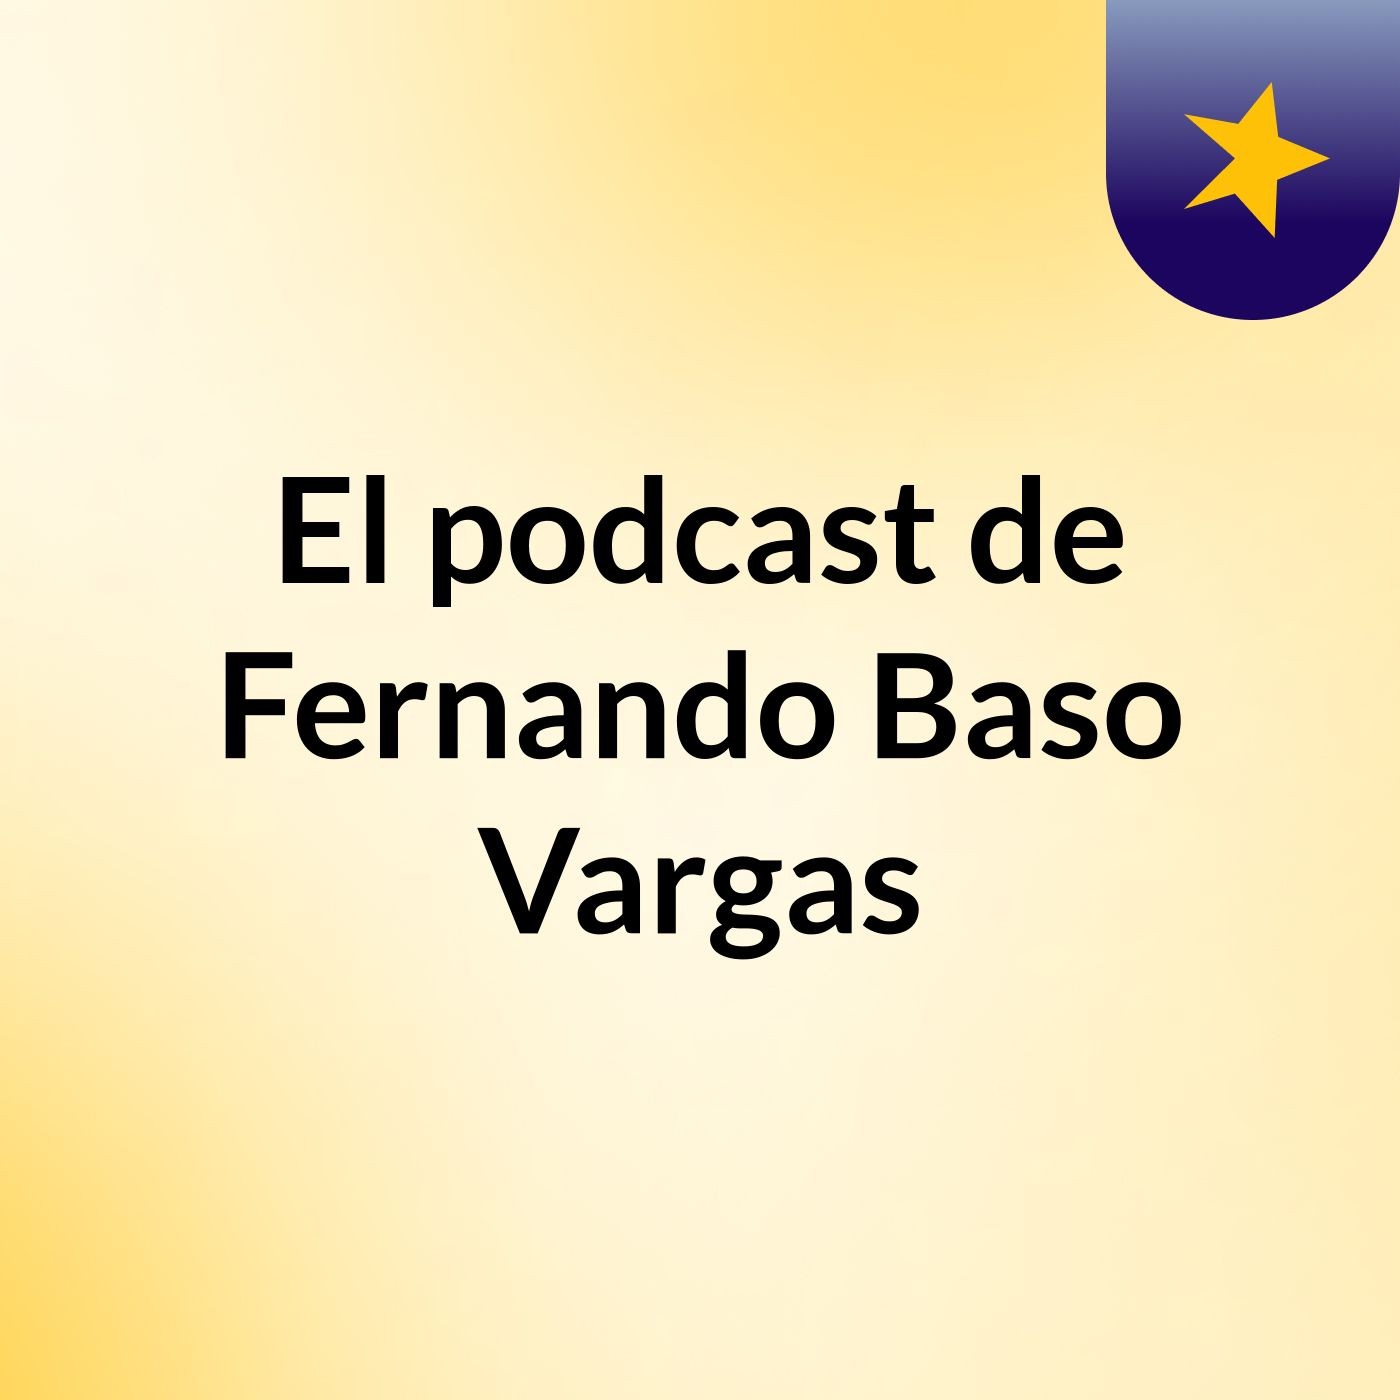 El podcast de Fernando Baso Vargas